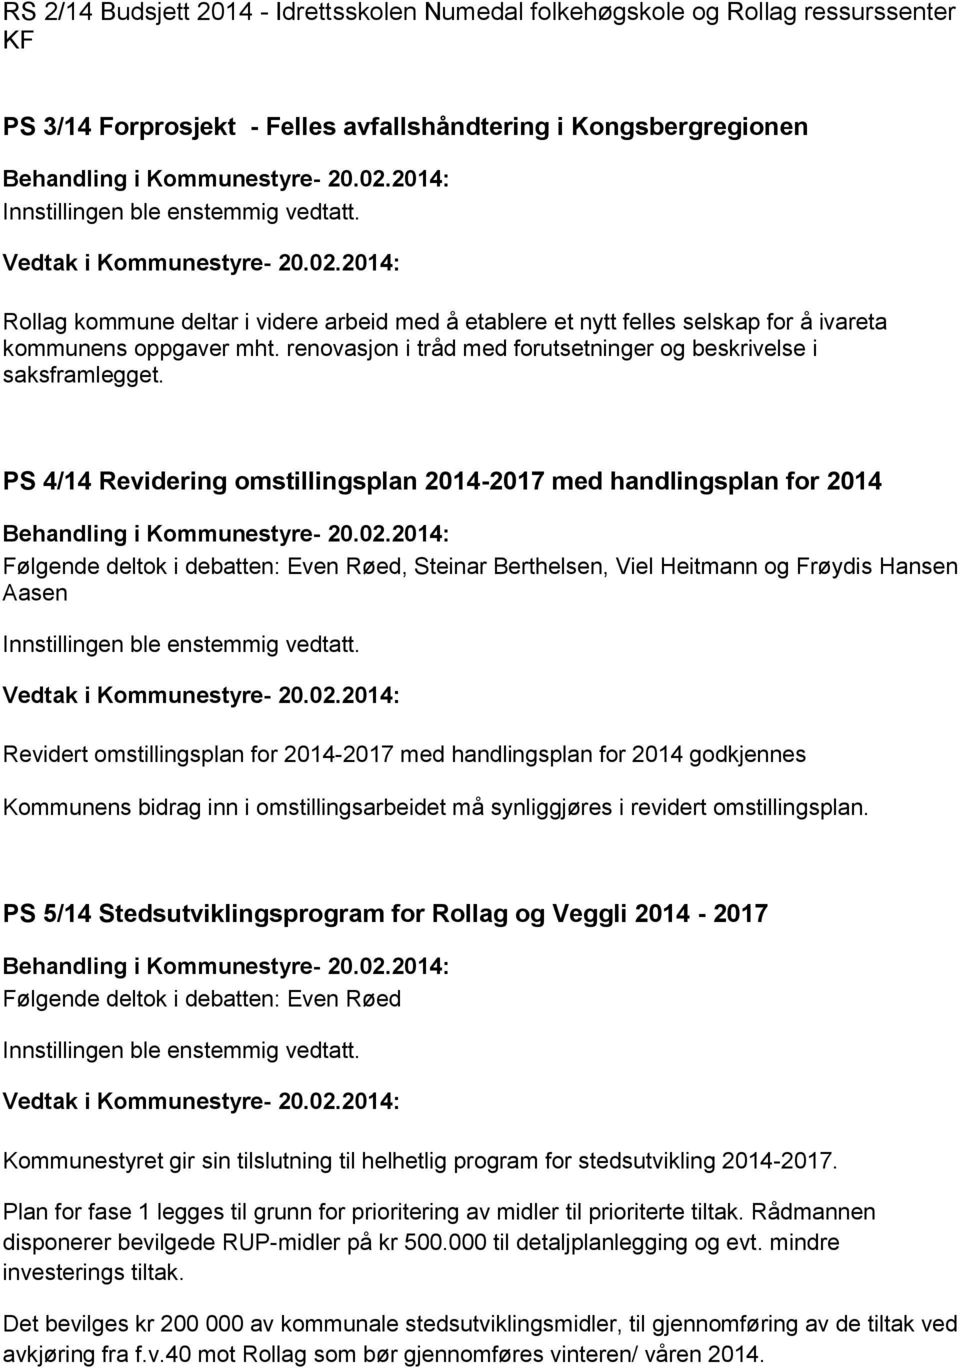 PS 4/14 Revidering omstillingsplan 2014-2017 med handlingsplan for 2014 Følgende deltok i debatten: Even Røed, Steinar Berthelsen, Viel Heitmann og Frøydis Hansen Aasen Innstillingen ble enstemmig